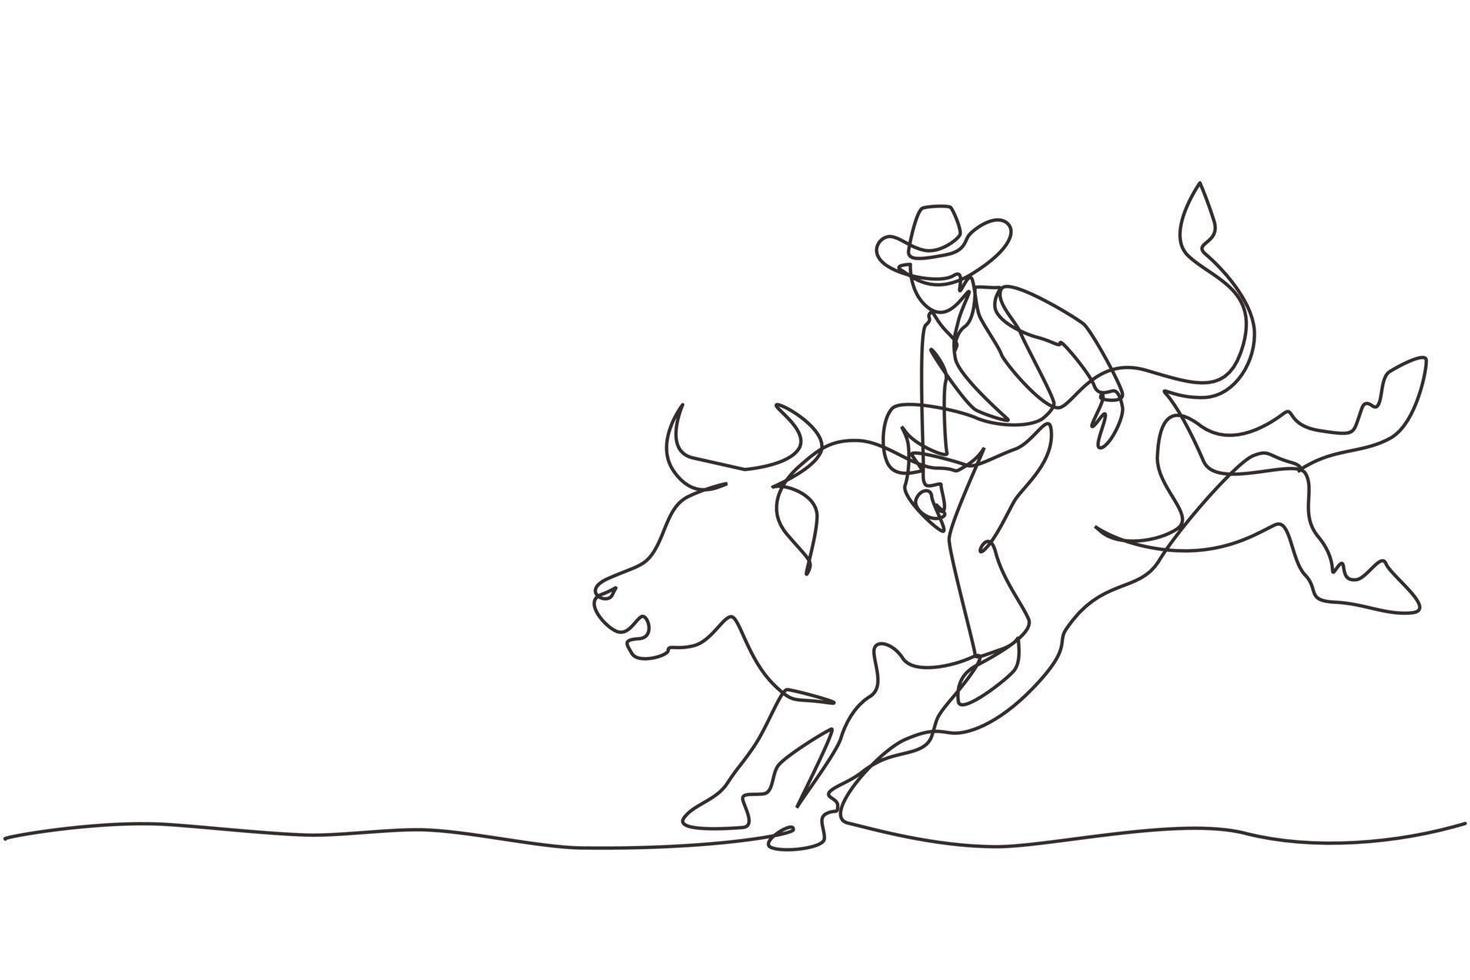 continue een lijntekening cowboy die op een wilde stier rijdt voor een spannende rodeoshow. sterke en dappere cowboy met hoed sluit je aan bij de rodeo-competitie die op een wilde stier rijdt. enkele lijn ontwerp vector grafische afbeelding